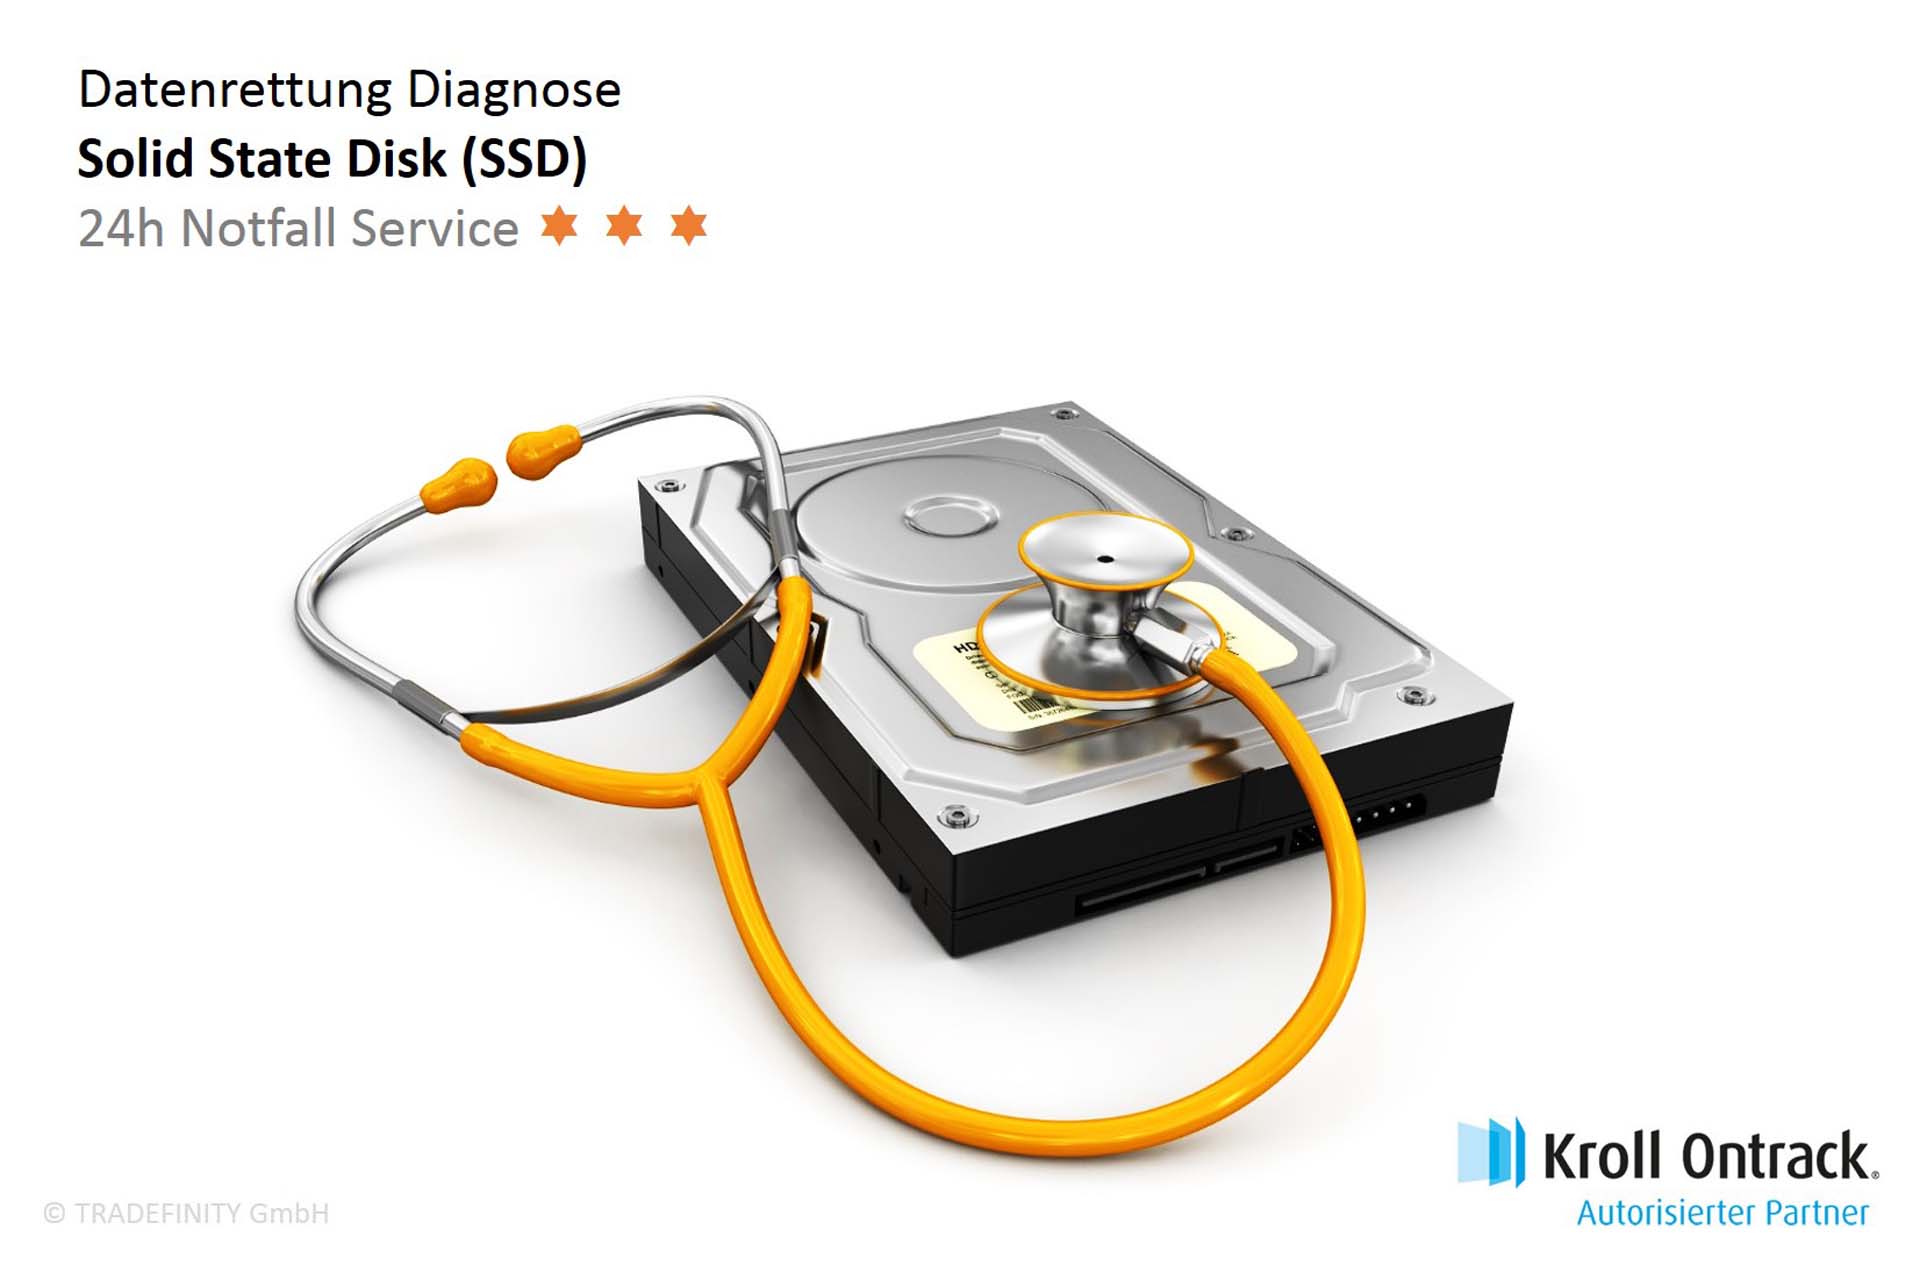 Datenrettung Diagnose (24h Notfall Service) von SSD